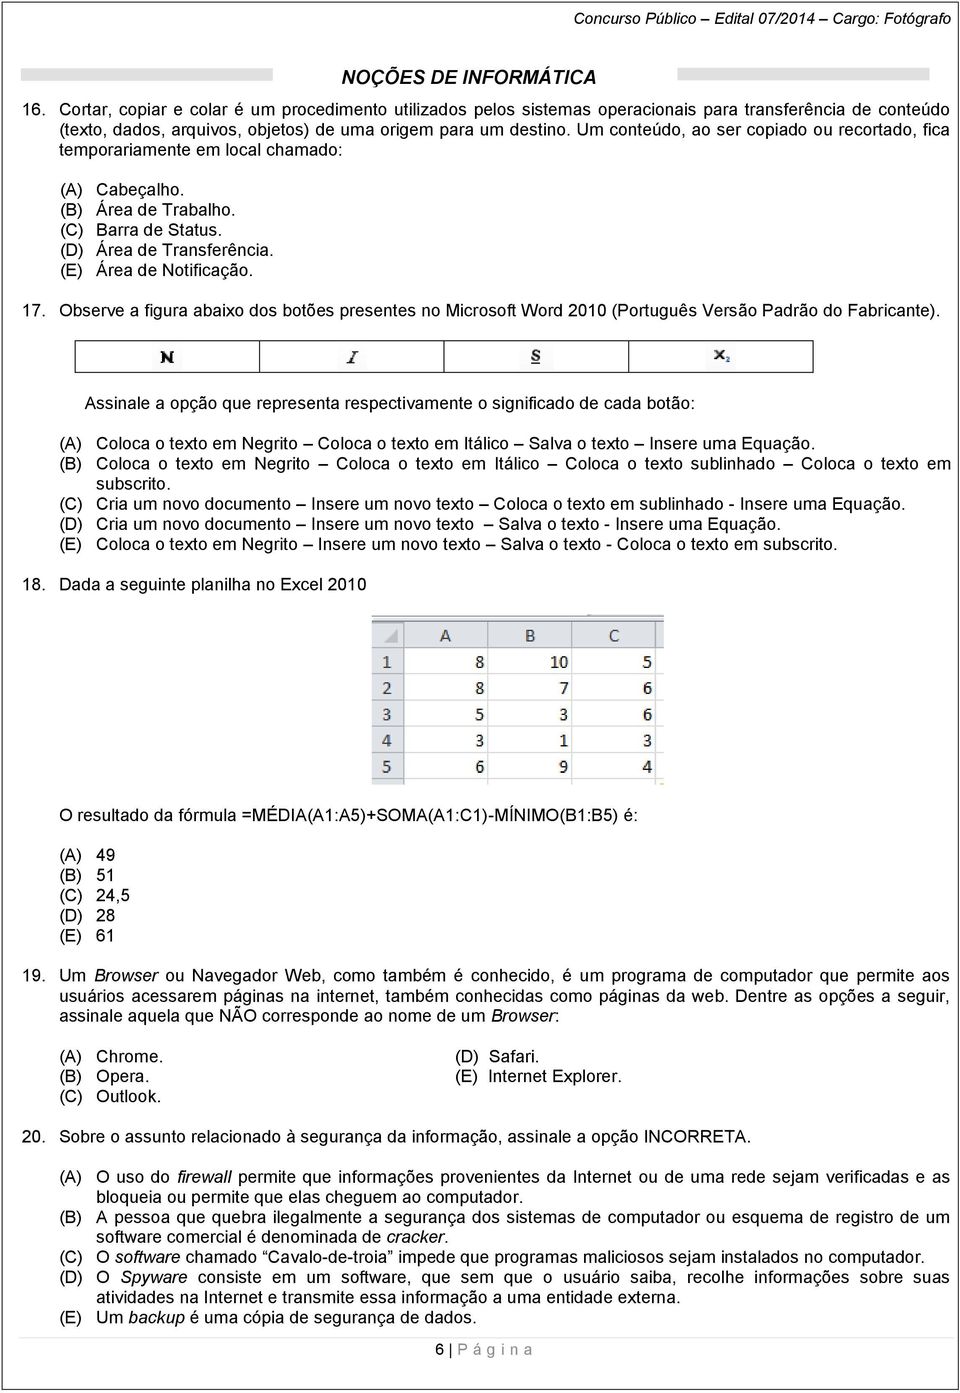 NOÇÕES DE INFORMÁTICA 17. Observe a figura abaixo dos botões presentes no Microsoft Word 2010 (Português Versão Padrão do Fabricante).